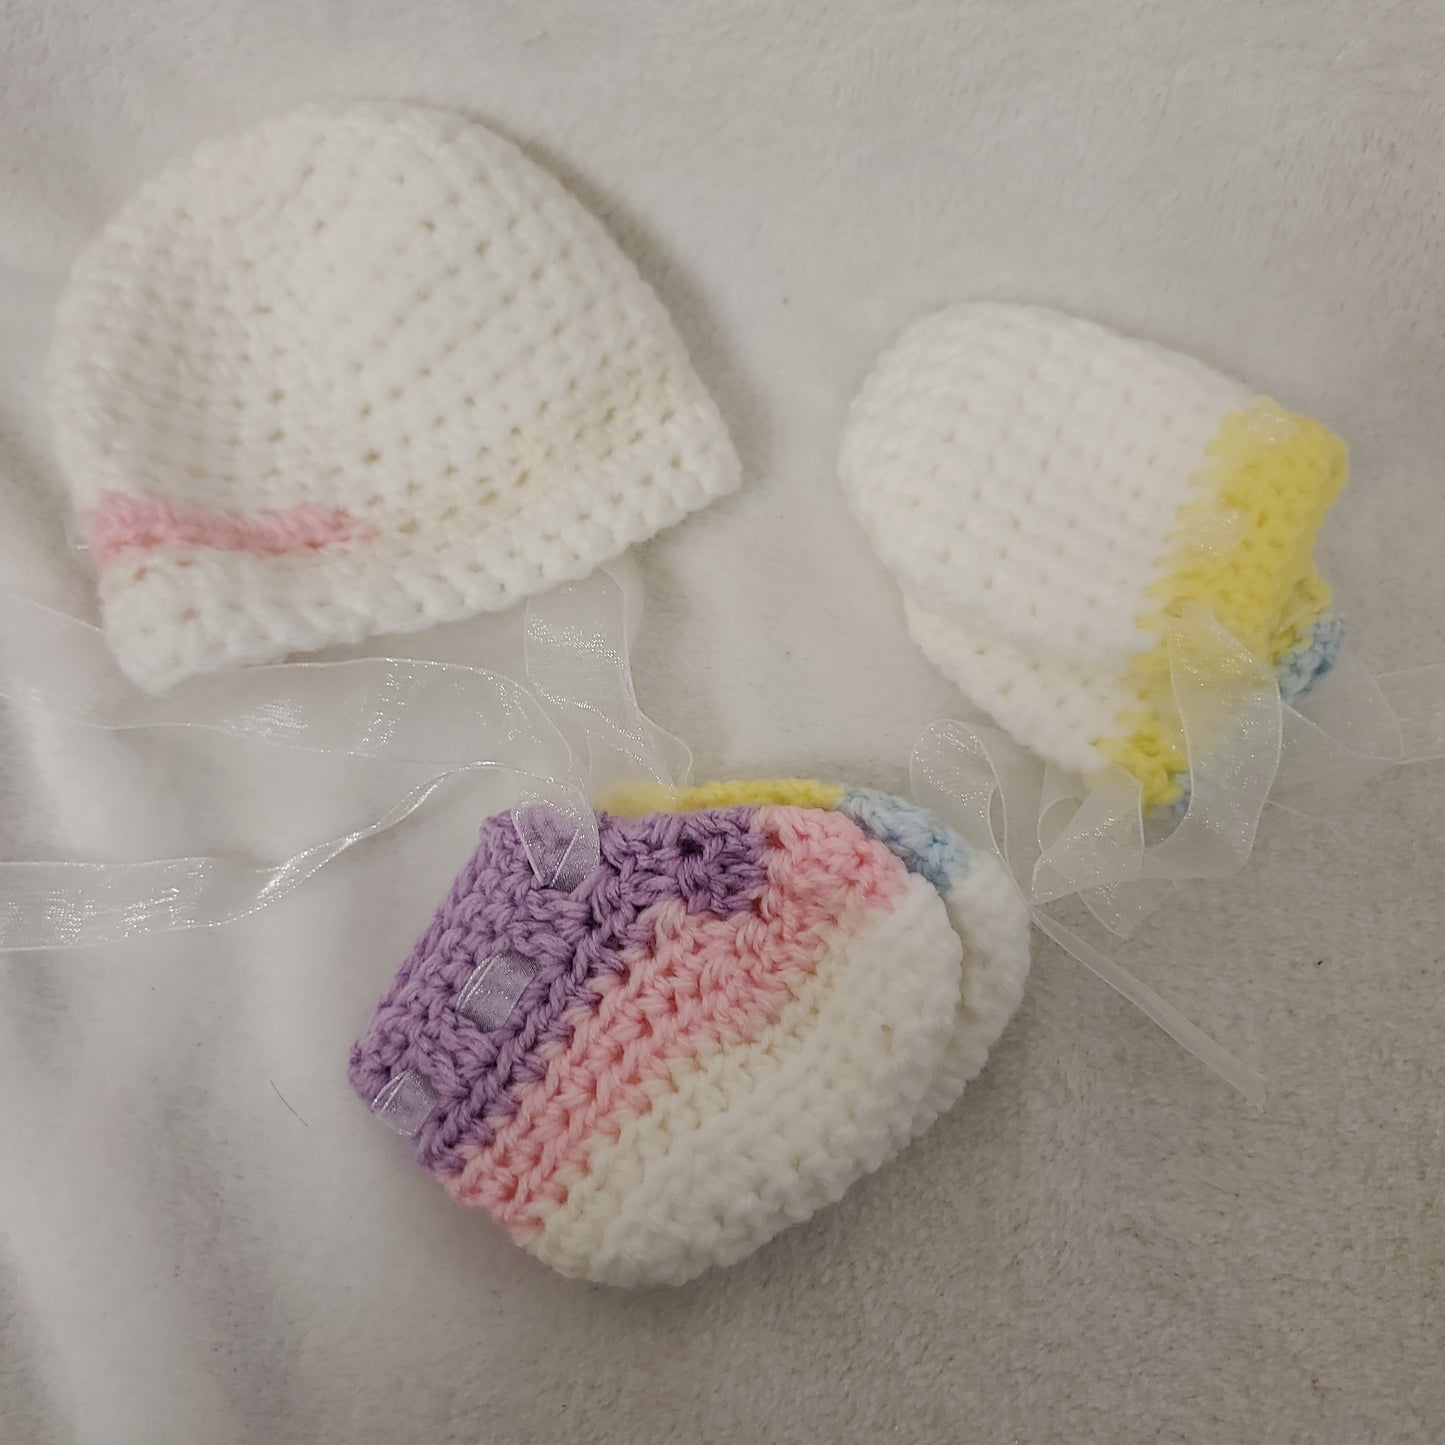 Newborn Hat, Mitten, and Bootie Sets